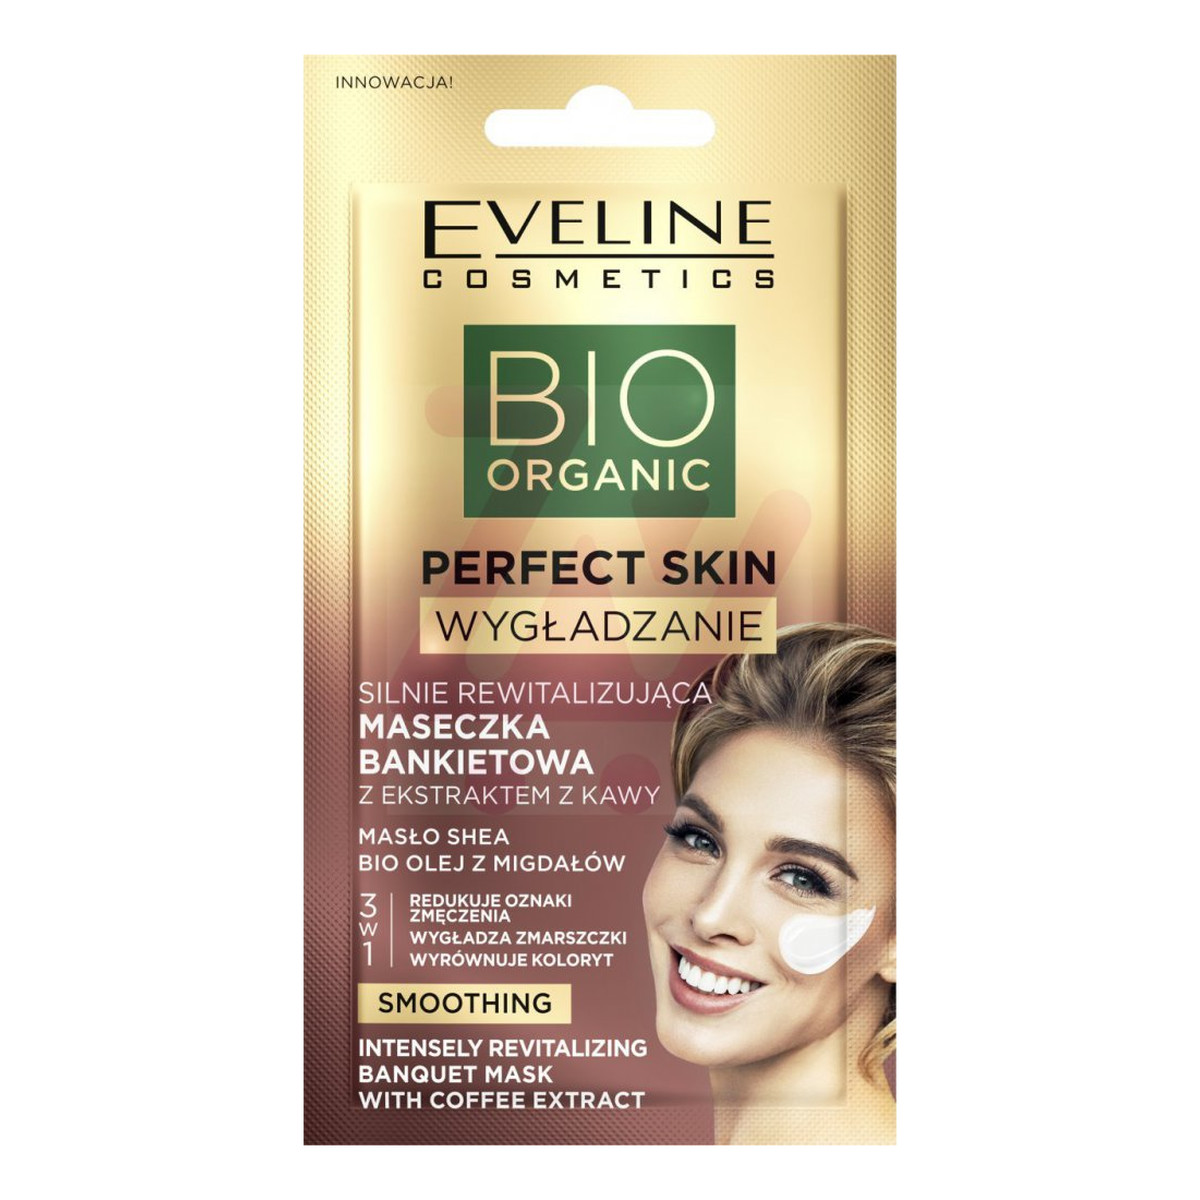 Eveline Bio Organic Perfect Skin silnie rewitalizująca maseczka bankietowa z ekstraktem z kawy Masło Shea i Bioe Olej z Migdałów 8ml